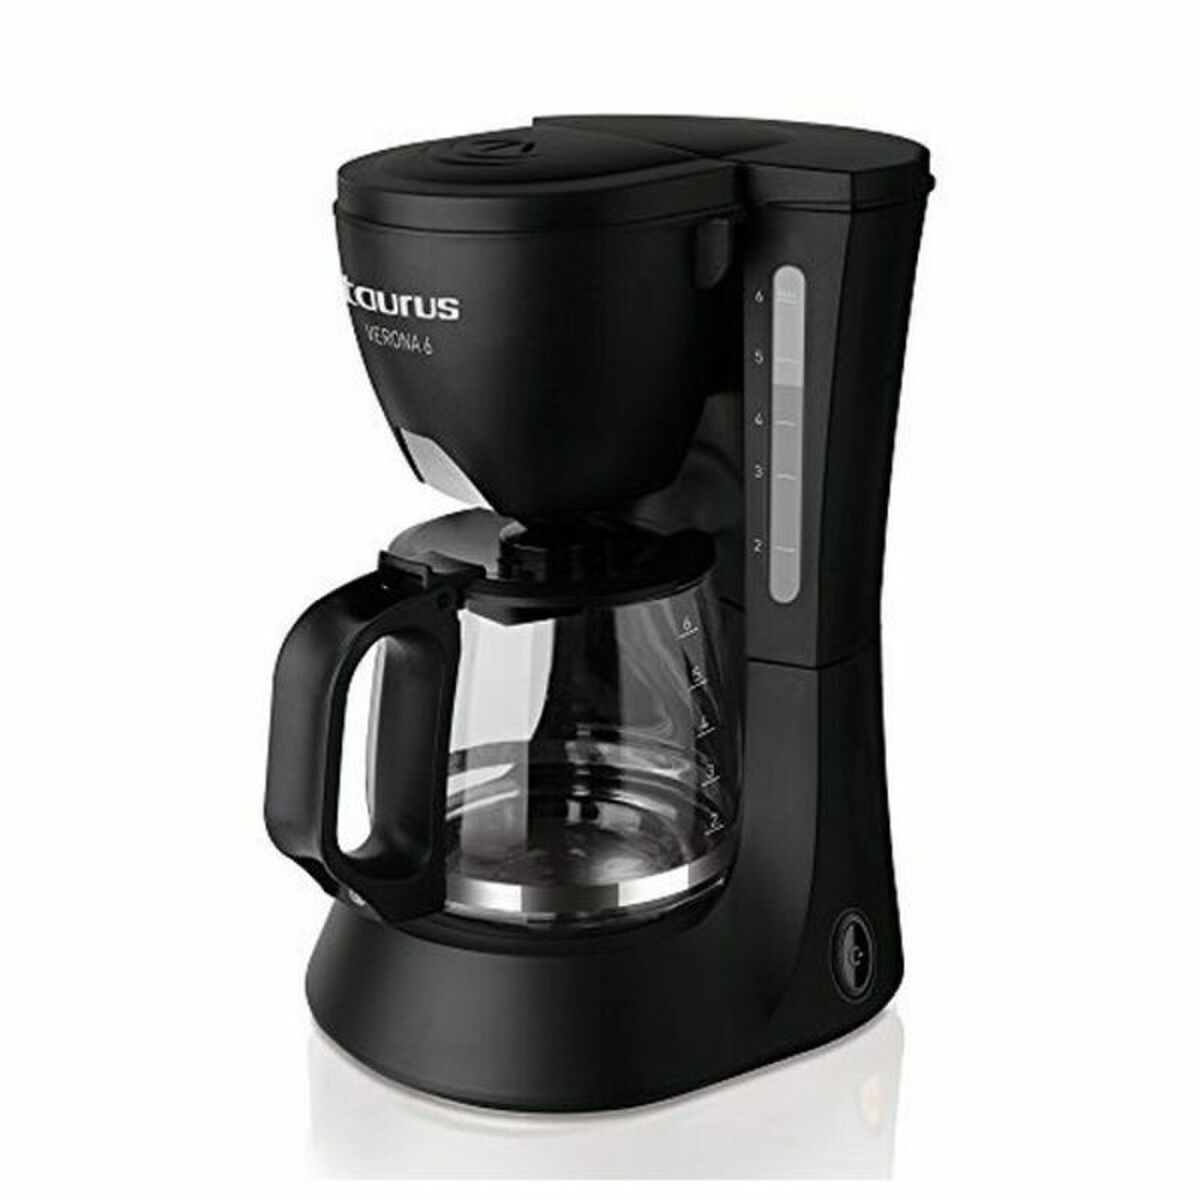 Filterkaffeemaschine Taurus 920.614 550W Schwarz 600 W 550 W 600 ml - CA International  